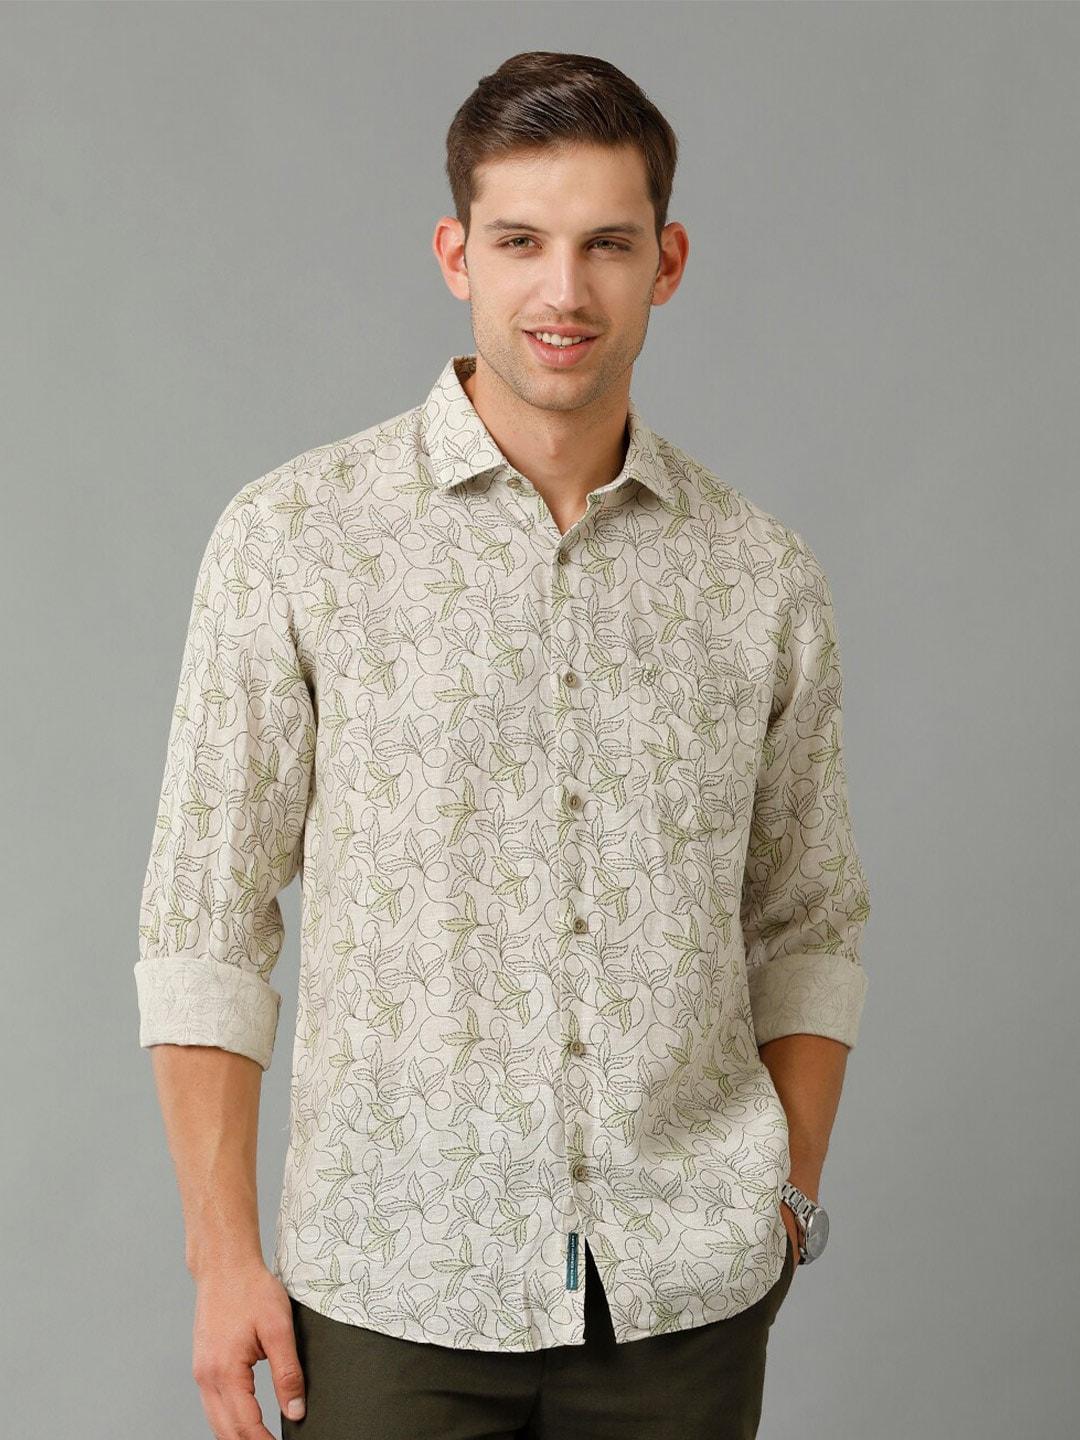 linen-club-contemporary-floral-printed-spread-collar-opaque-linen-casual-shirt